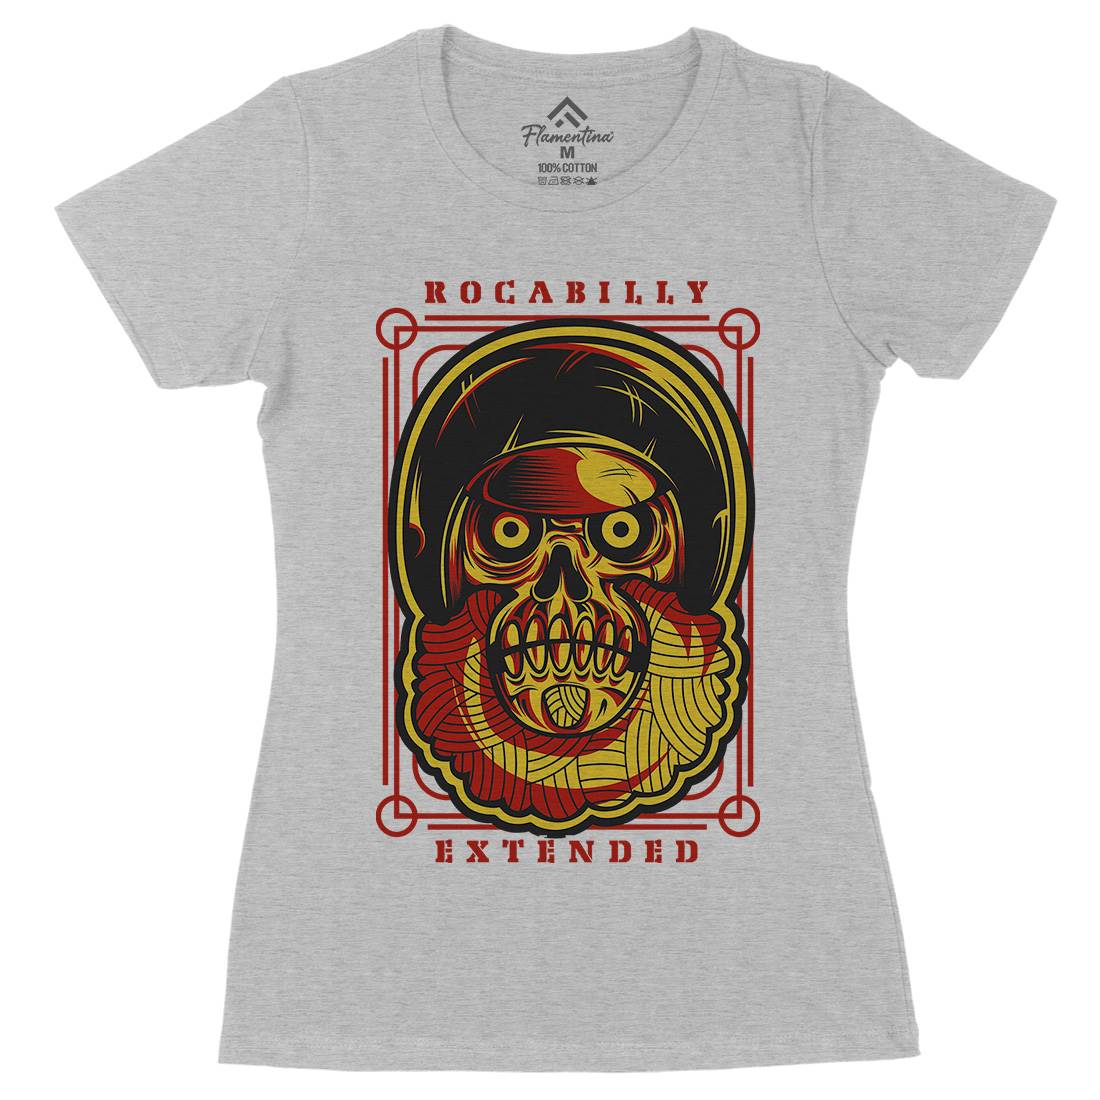 Rockabilly Womens Organic Crew Neck T-Shirt Music D804